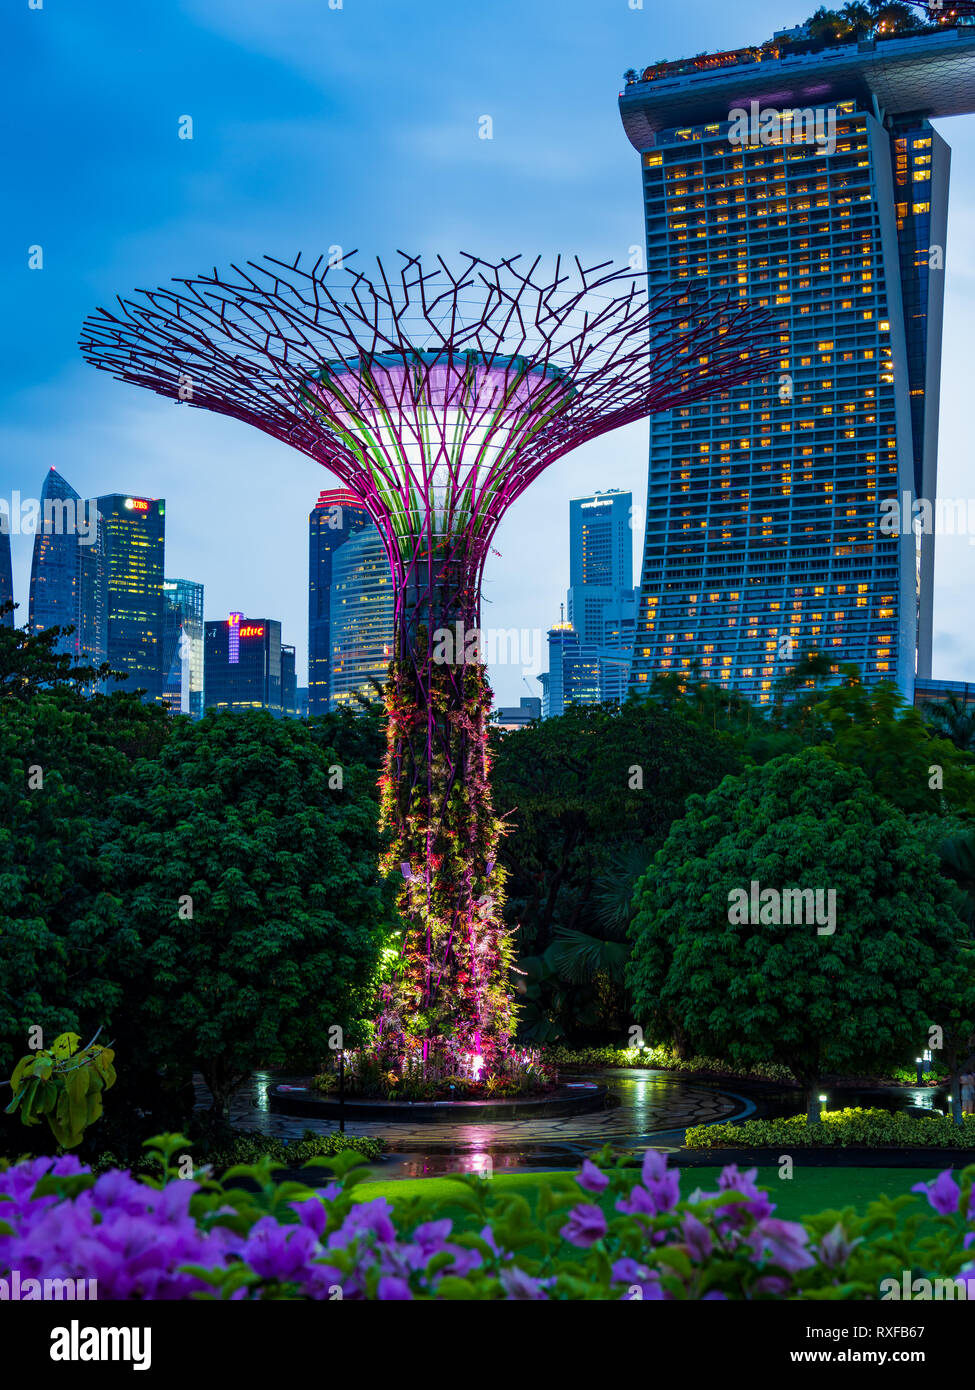 SINGAPORE CITY, Singapur - Februar 03, 2019: Gardens by the Bay in Singapur, einzigartige Vertikale Gärten ähnlich hohen Bäumen, mit großen Vordächern Stockfoto